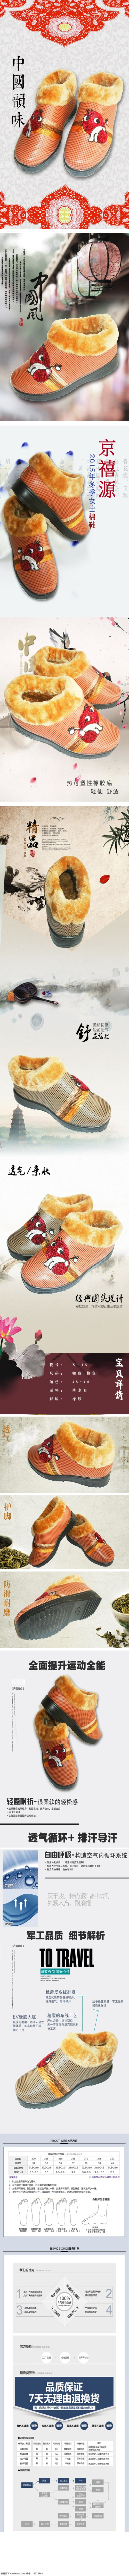 小朱设计策划 北京市 鞋 淘宝 店铺 详情 页 小朱 策划 北京 市鞋 详情页 白色